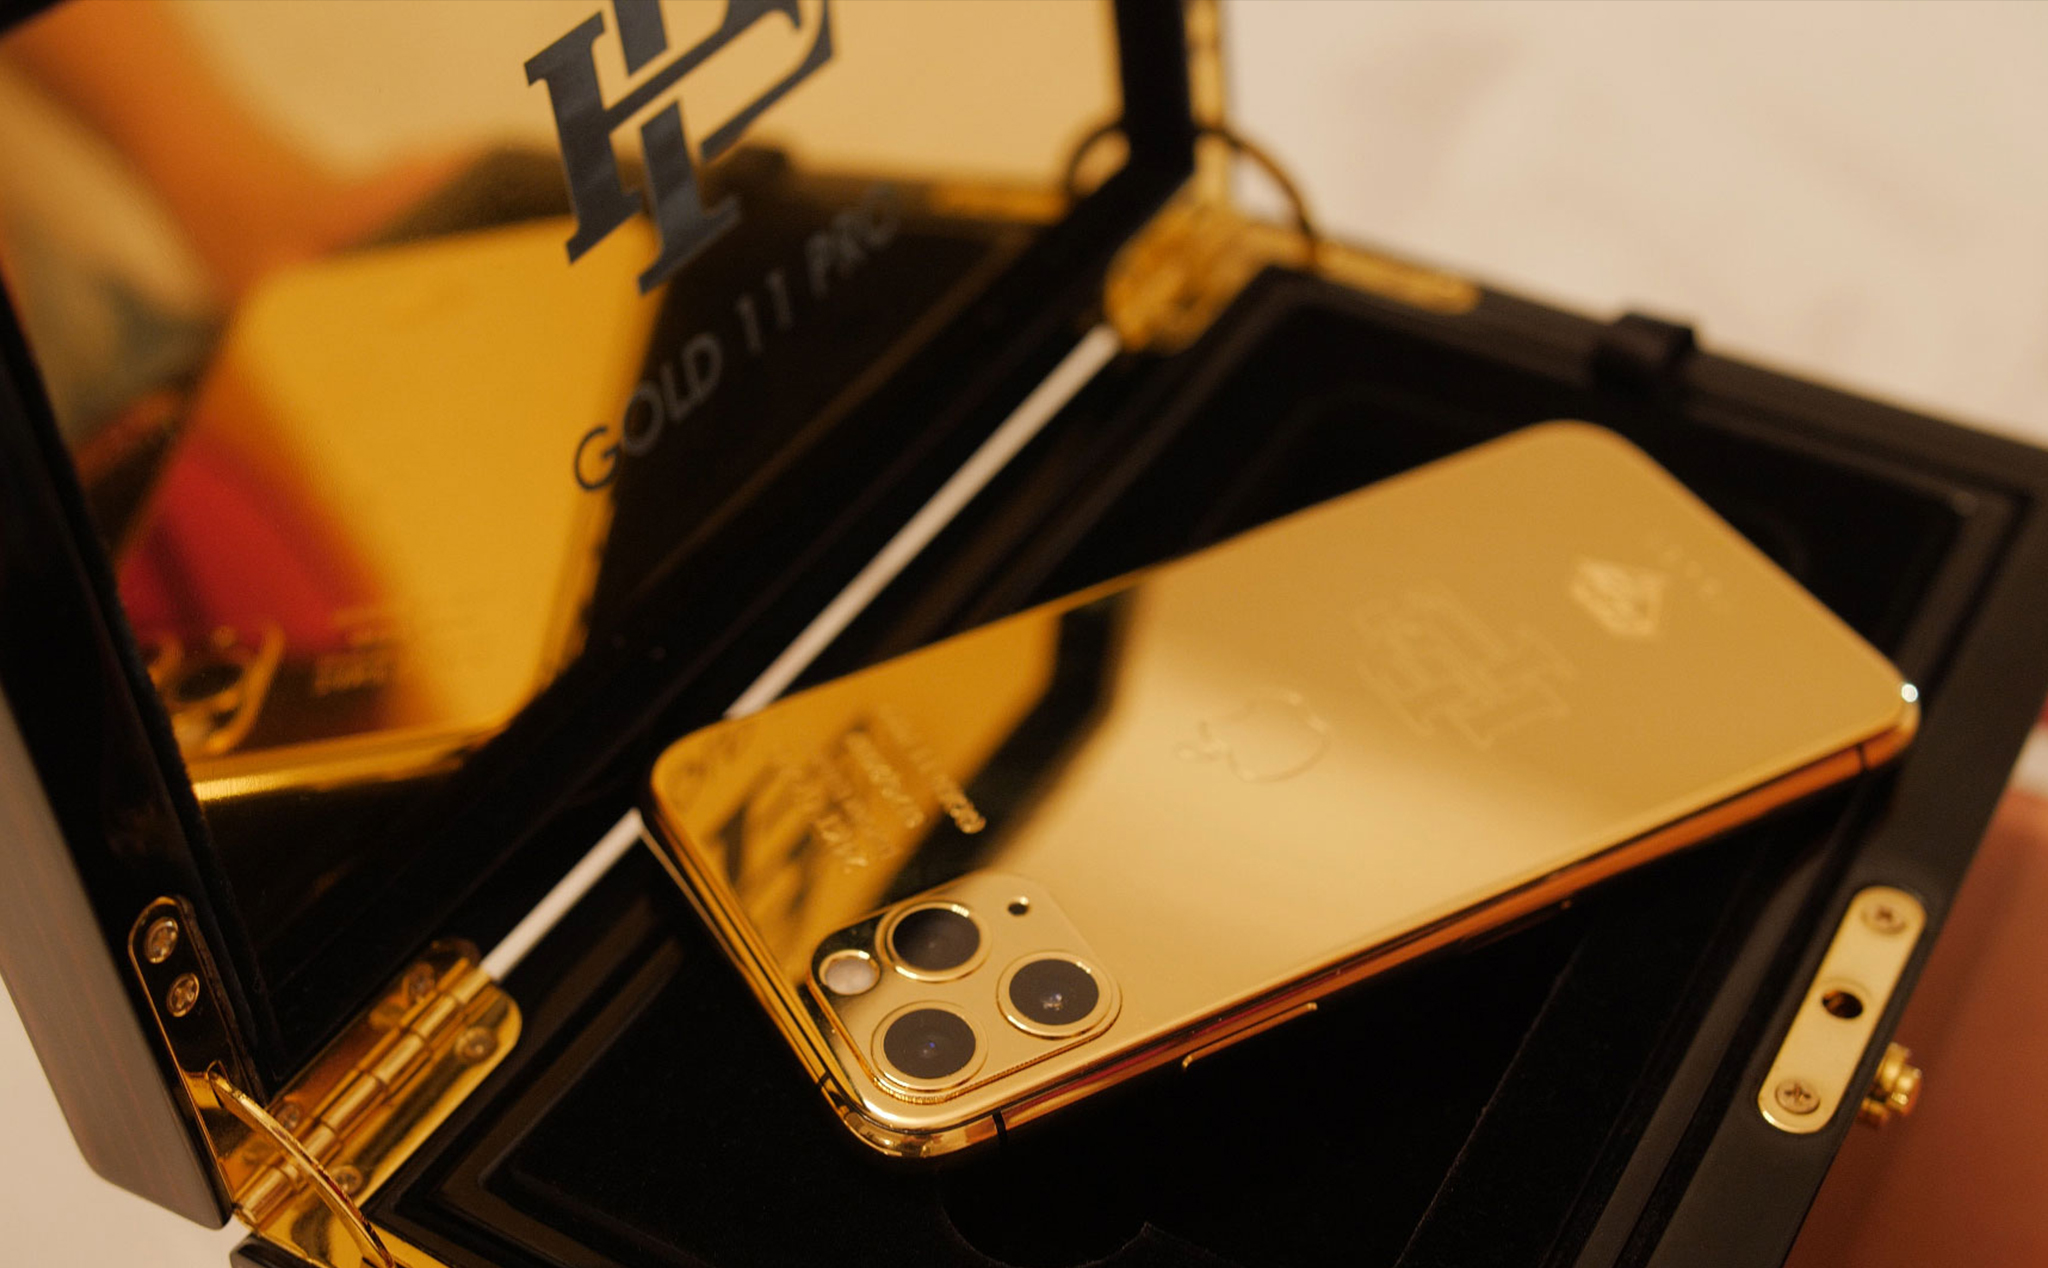 Sau Galaxy Fold giá rẻ, Escobar tiếp tục bán iPhone 11 Pro tân trang "mạ vàng" với giá 499 đô